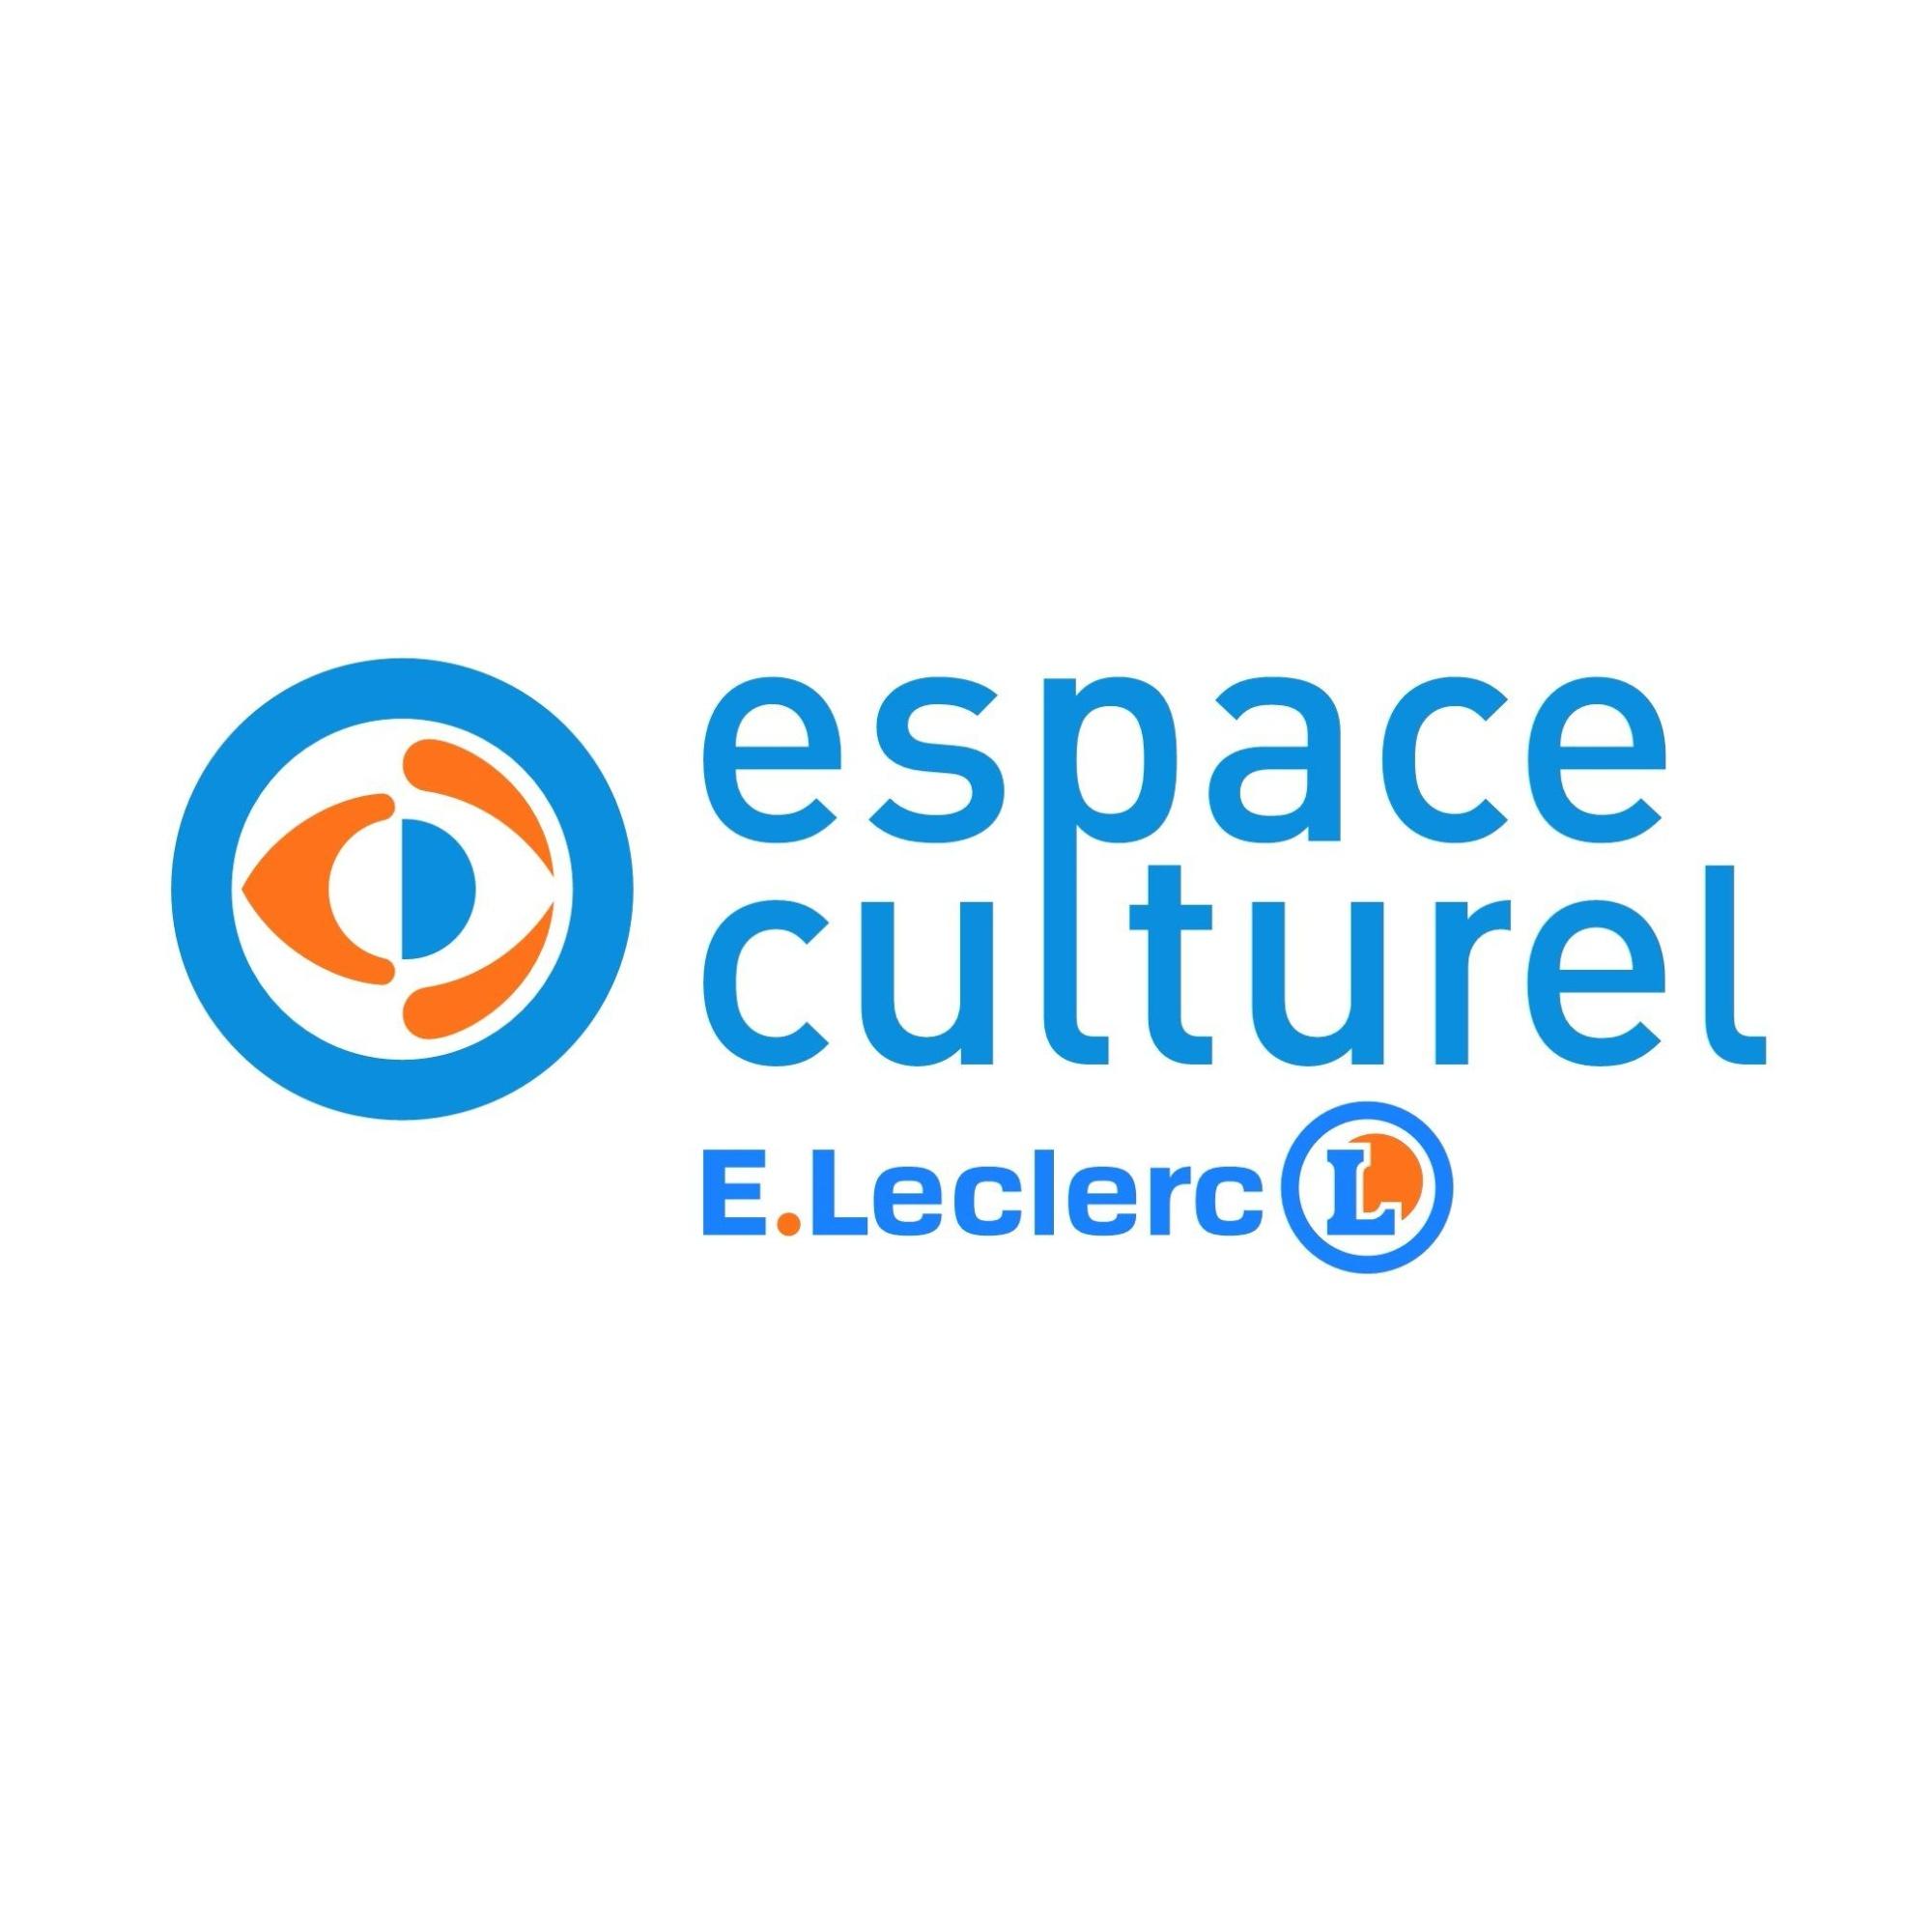 E.leclerc Espace Culturel Cogolin